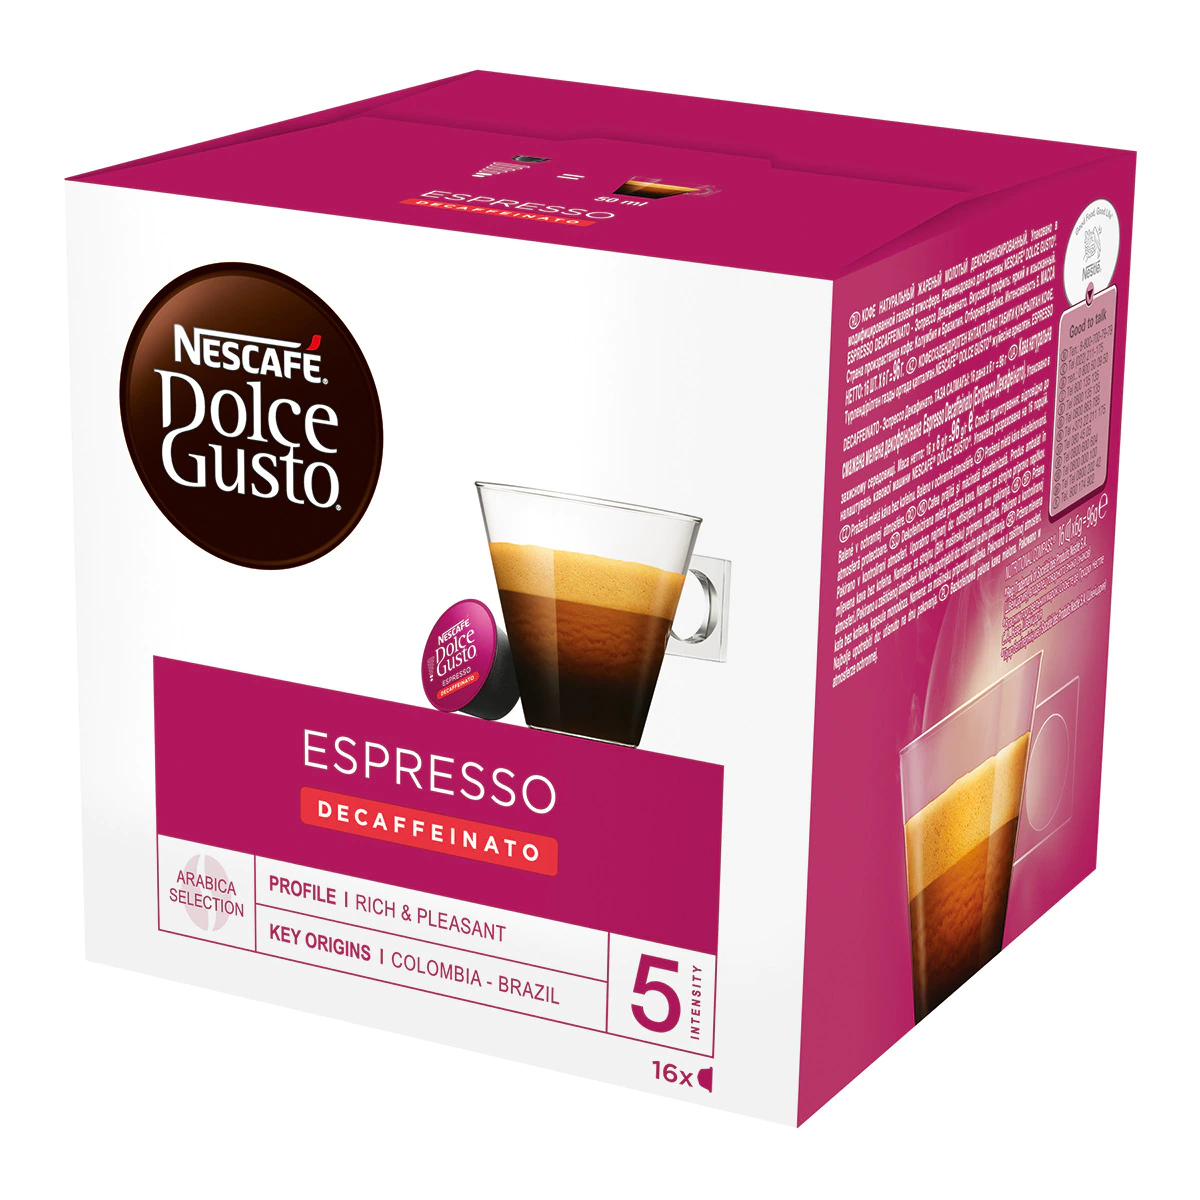 Estuche 16 cápsulas NESCAFE DOLCE GUSTO café espresso descafeinado selección arábica de Colombia y Brasil intensidad 5